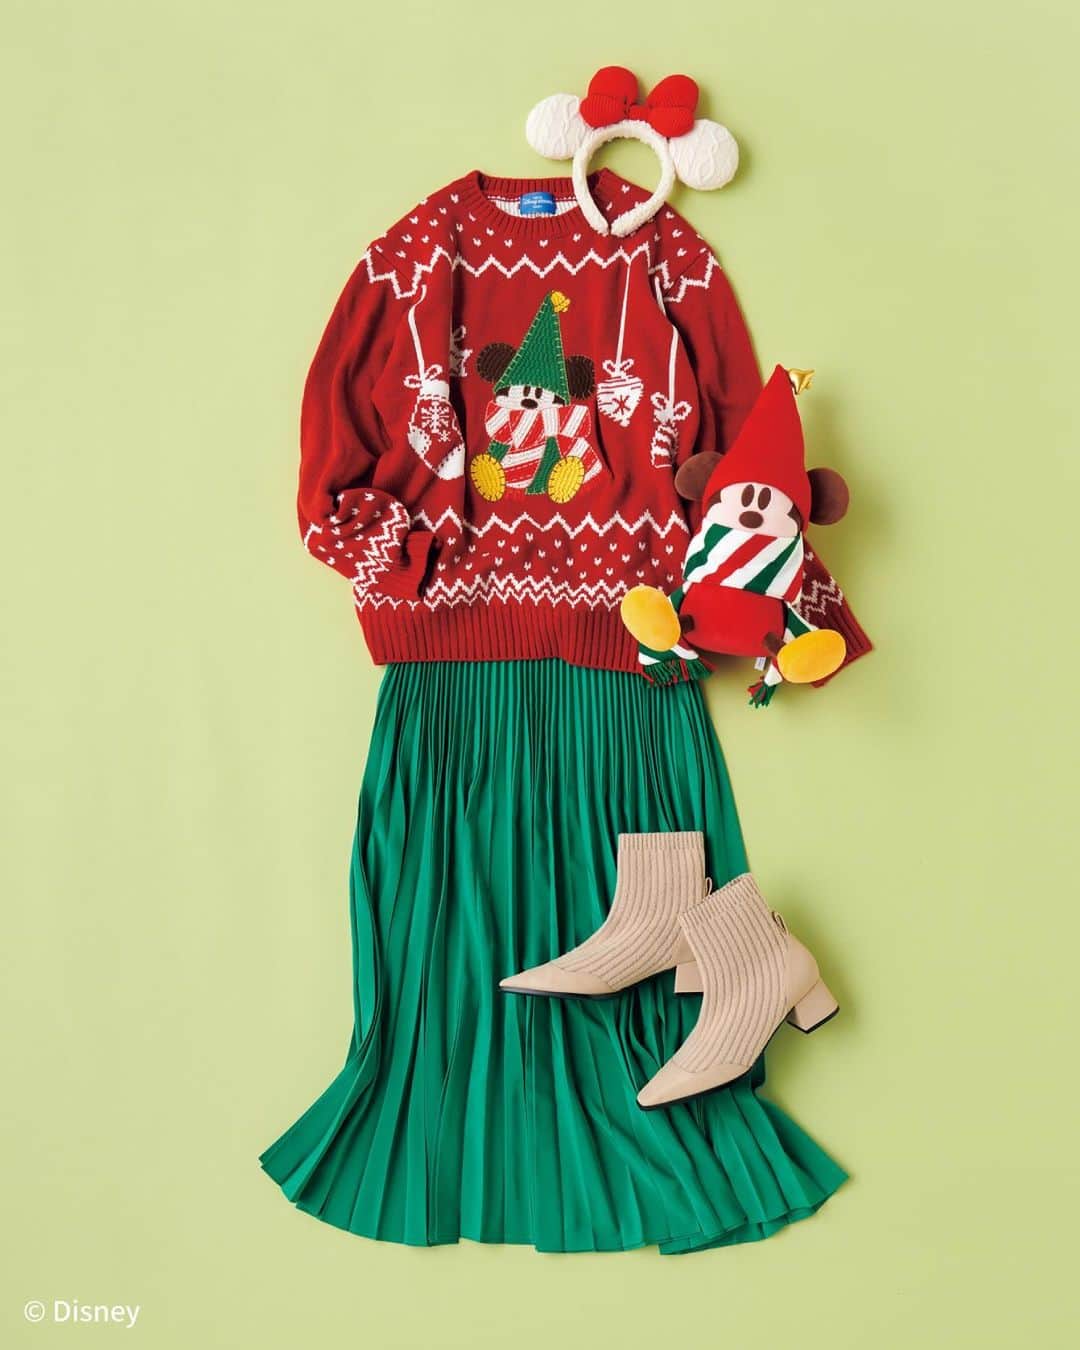 月刊ディズニーファン【公式】のインスタグラム：「大好きなキャラクターをイメージしたコーディネートでパークをもっと楽しもう❣️ #ディズニーファン１月号 から、とっておきの#ディズニーバウンド コーデを紹介するね🪄✨   📷#クリスマス#バウンド 赤いセーターに緑のスカートを合わせたクリスマスにぴったりなコーデ🎄 #リルリンリン がとってもキュート💕   📷#ミッキー バウンド ミッキーの耳付きキャップとデニムのブルーがマッチ👖 赤い靴がポイントだよ❤️👟  📷#チップとデール バウンド 色違いの#おそろコーデ が可愛い❣️🐿️ 仲よしコンビで一緒に着て、思い出を作っちゃおう🌟  📷#ミニー バウンド シアー素材のトップスはドット柄でミニーをイメージ🎀 パークデートにもぴったりなコーデだよ💗   １月号では、#バウンドコーデ でパークを楽しむ方法やコツなども紹介しているのでぜひチェックしてみてね📝   #ディズニーファン1月号 に掲載の記事は、2023年11月13日時点の情報に基づいています。掲載した情報は、予告なく内容が変更、中止になる場合があります。  各情報の最新状況につきましては、誌面に掲載のお問い合わせ先にお問い合わせください。  東京ディズニーリゾートに関する情報は、 東京ディズニーリゾート・インフォメーションセンター 電話0570-00-8632　受付時間：10:00-15:00 （年中無休） （一部のIP電話・国際電話の方は045-330-5211）にお問い合わせください。  読者の皆様にはご迷惑をおかけいたしますが、何とぞご了承いただけますよう、お願い申し上げます。  #ディズニーファン #月刊ディズニーファン #disneyfan  #disney #ディズニー #tokyodisneyresort #tokyodisneyland #tokyodisneysea#東京ディズニーリゾート#東京ディズニーランド#東京ディズニーシー#disneybound #ディズニークリスマス #disneychristmas」